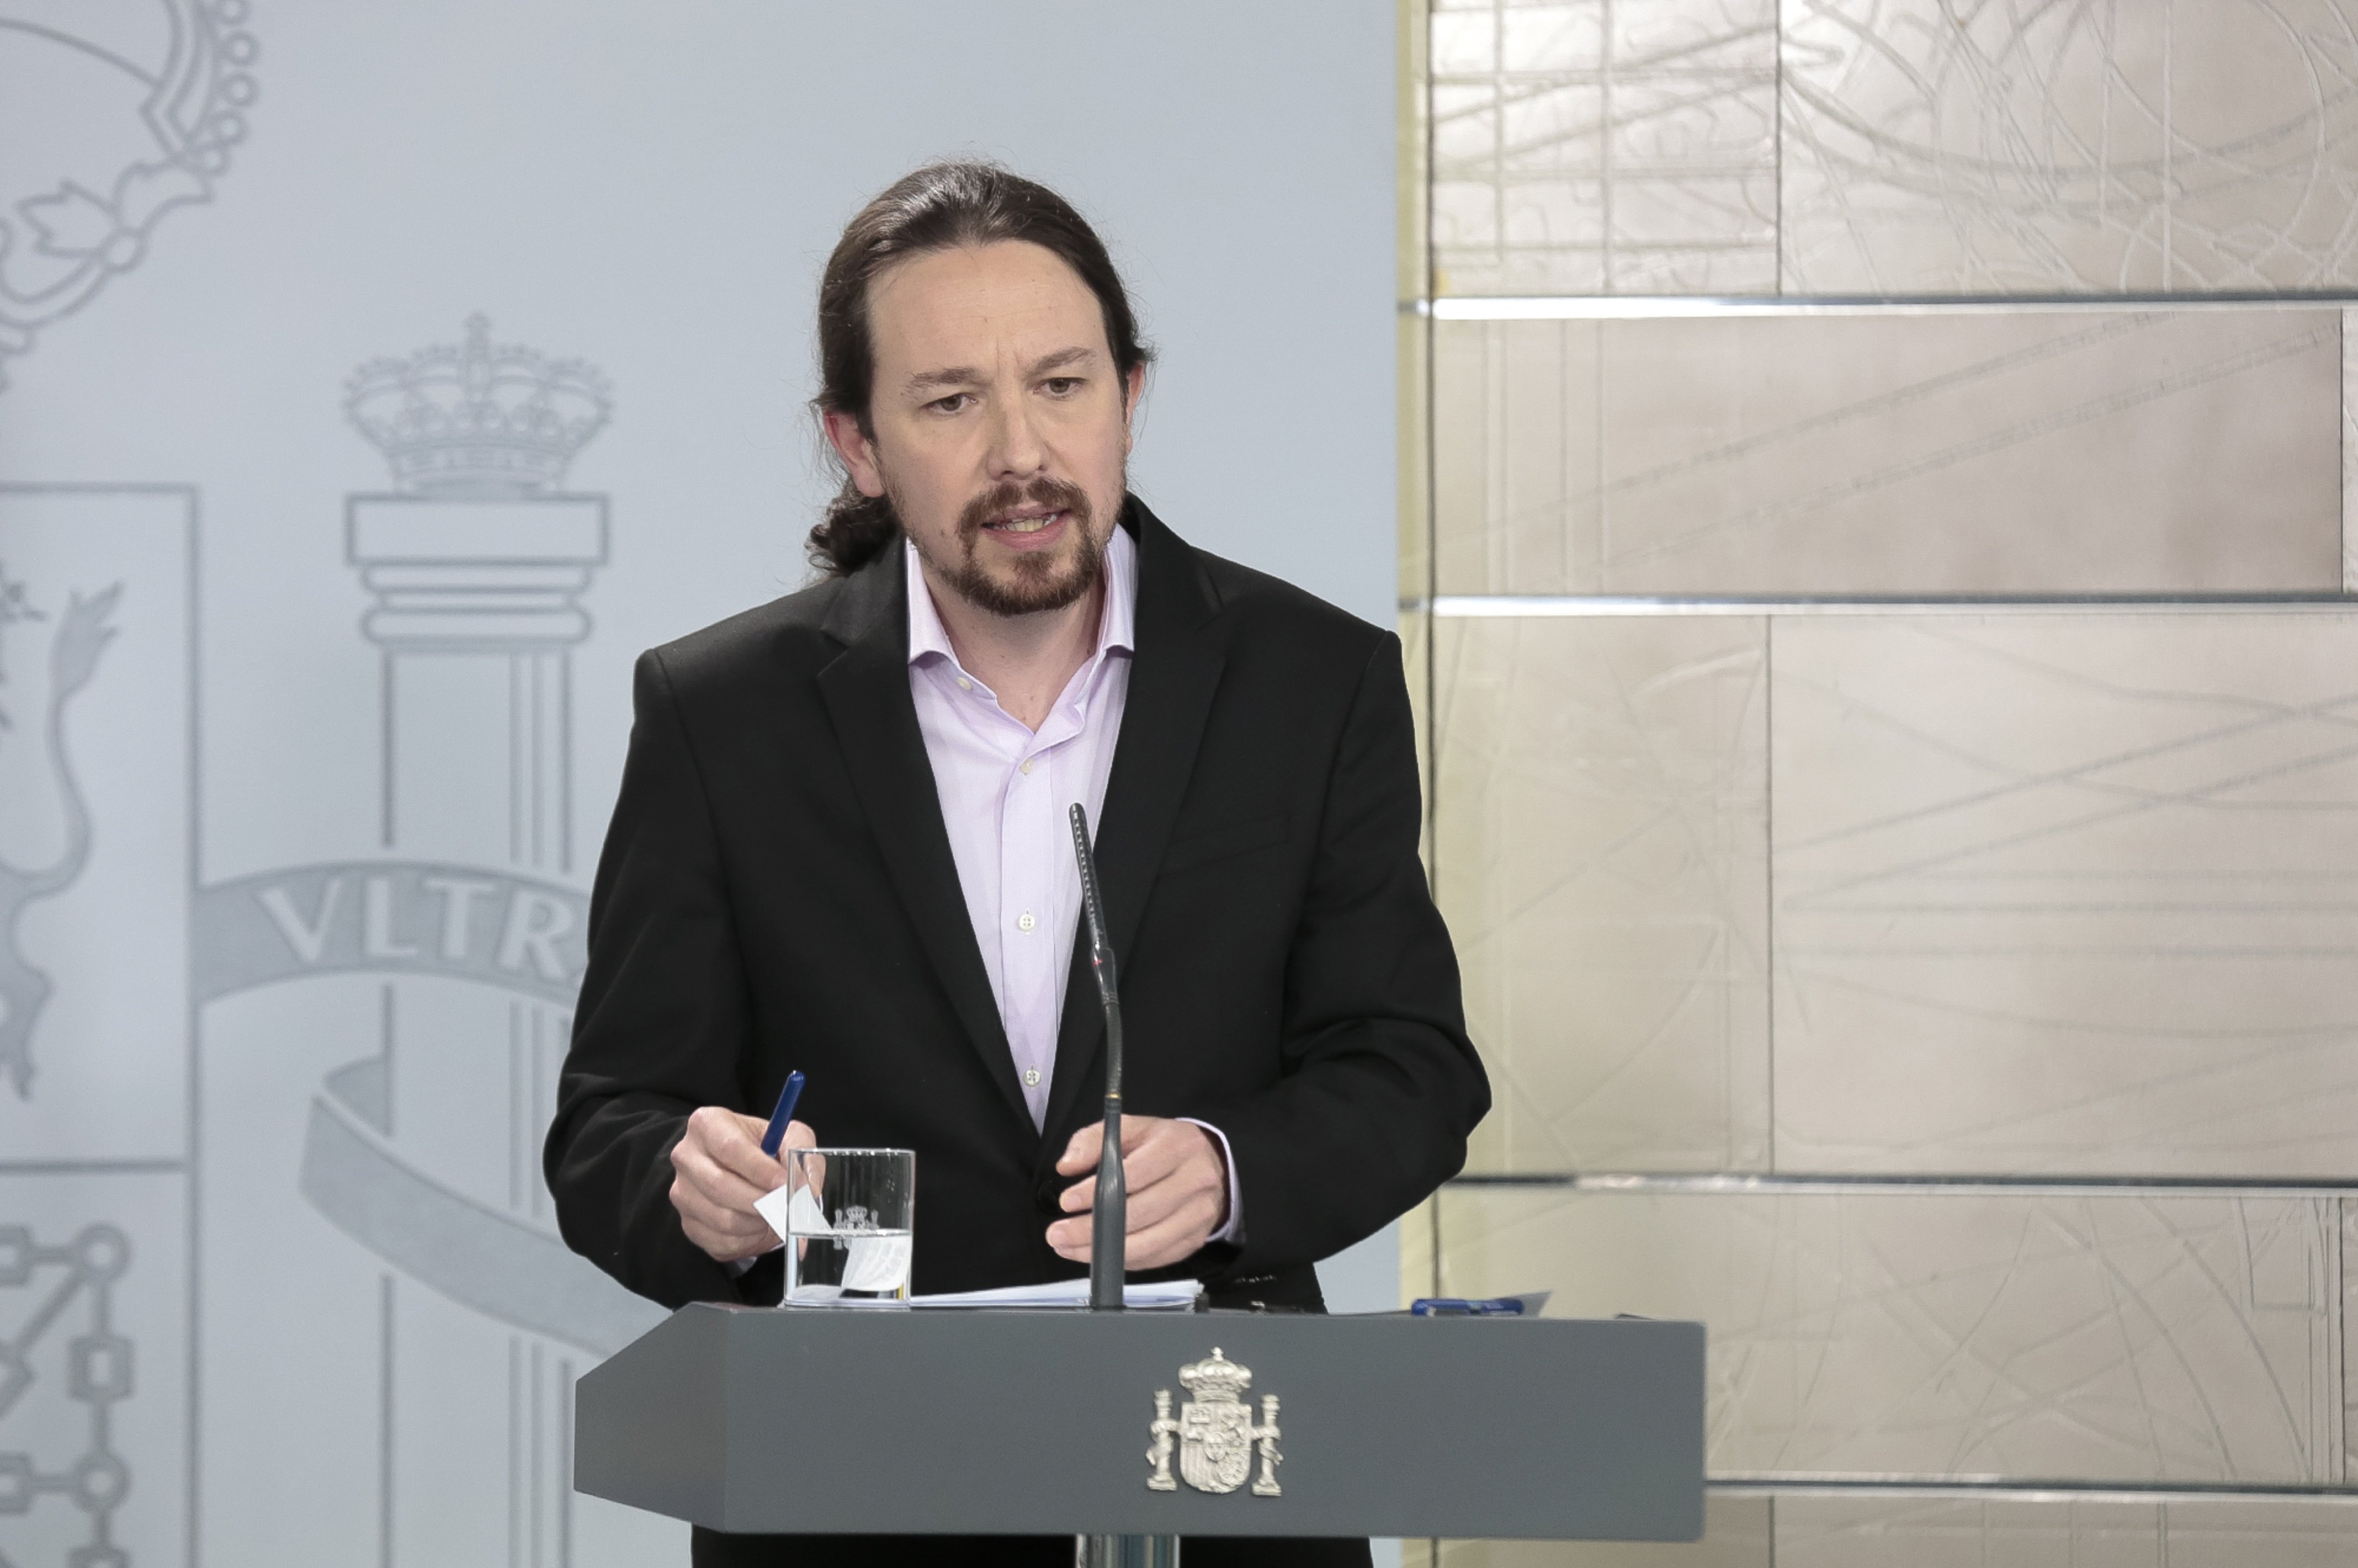 Luz verde al ingreso mínimo vital: "Hoy nace un nuevo derecho social en España"